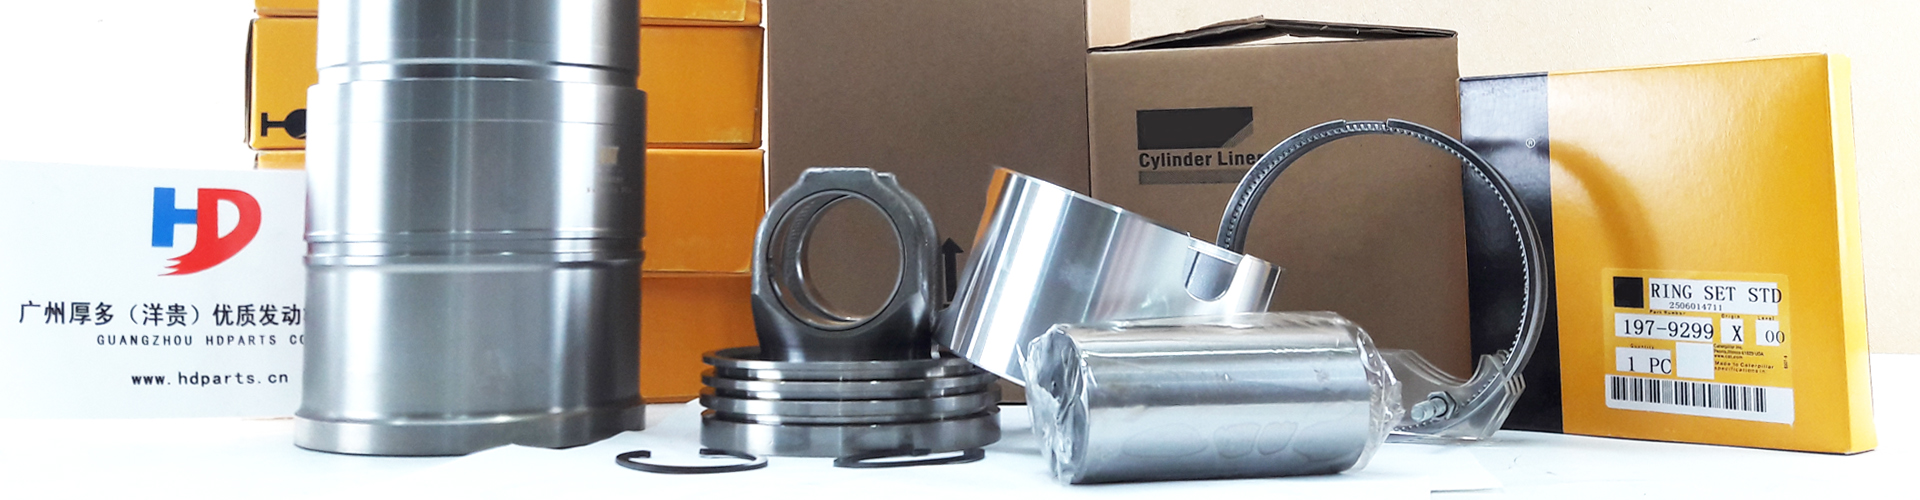 engine cylinder liner kit